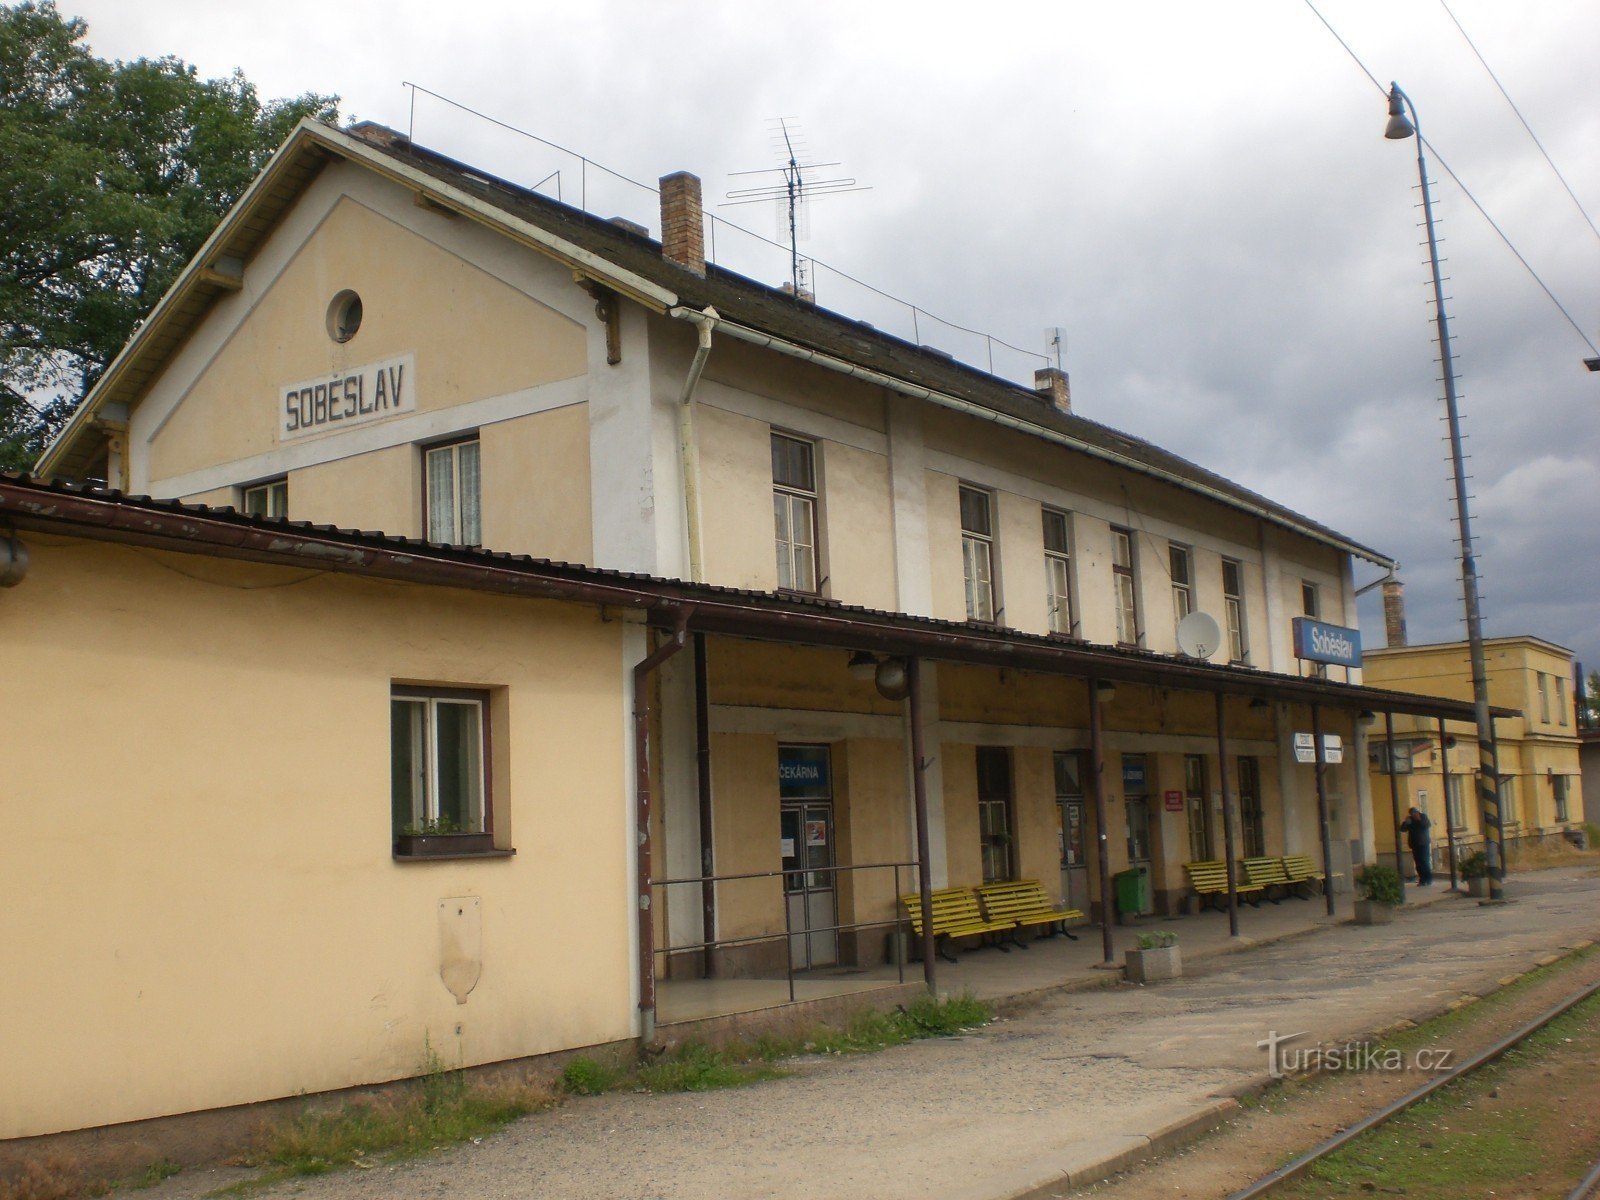 Soběslav - estación de tren